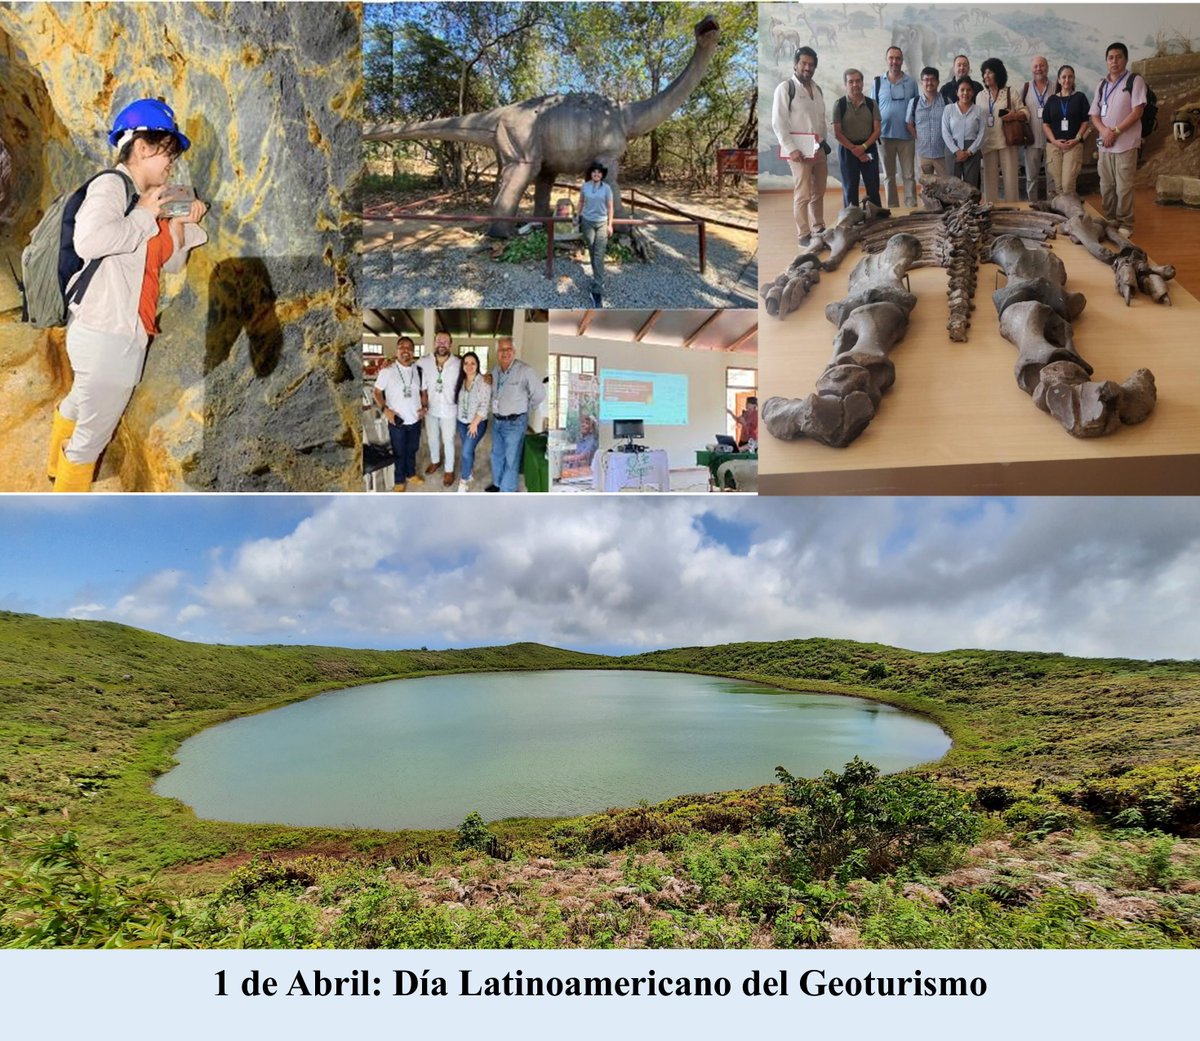 1/4 🧵
#EspecialesCIPAT| 
En conmemoración del Día Latinoamericano del Geoturismo; compartimos nuestro compromiso y aporte en esta área de investigación a través del Proyecto Geoparque “Ruta del Oro” y artículos científicos relacionados.